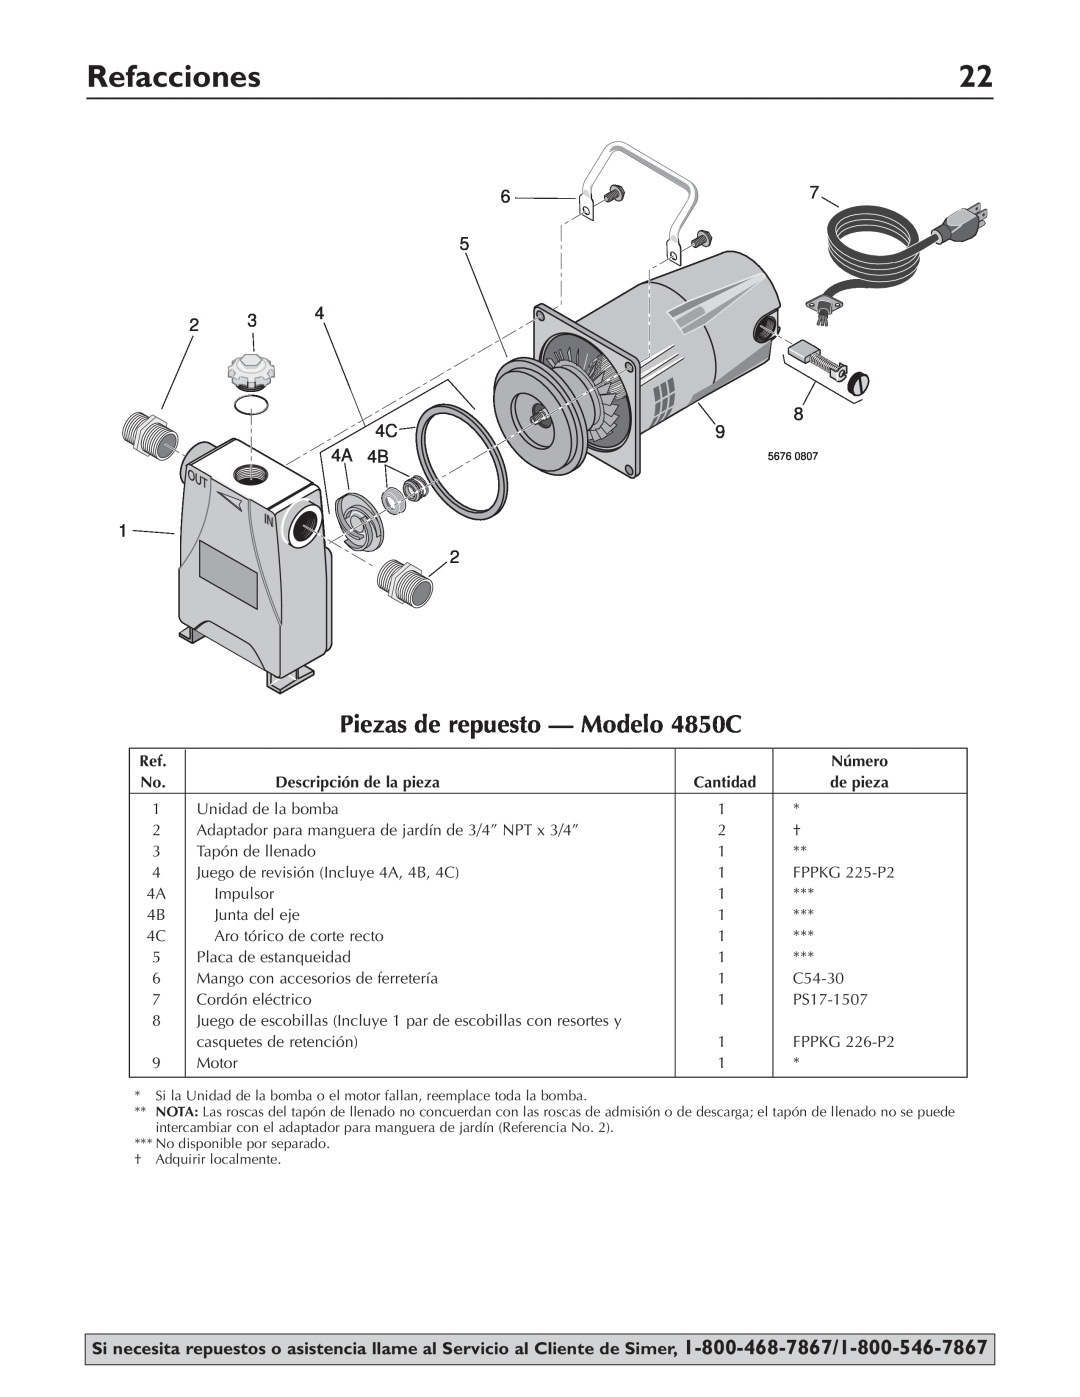 Simer Pumps owner manual Refacciones, Piezas de repuesto - Modelo 4850C 